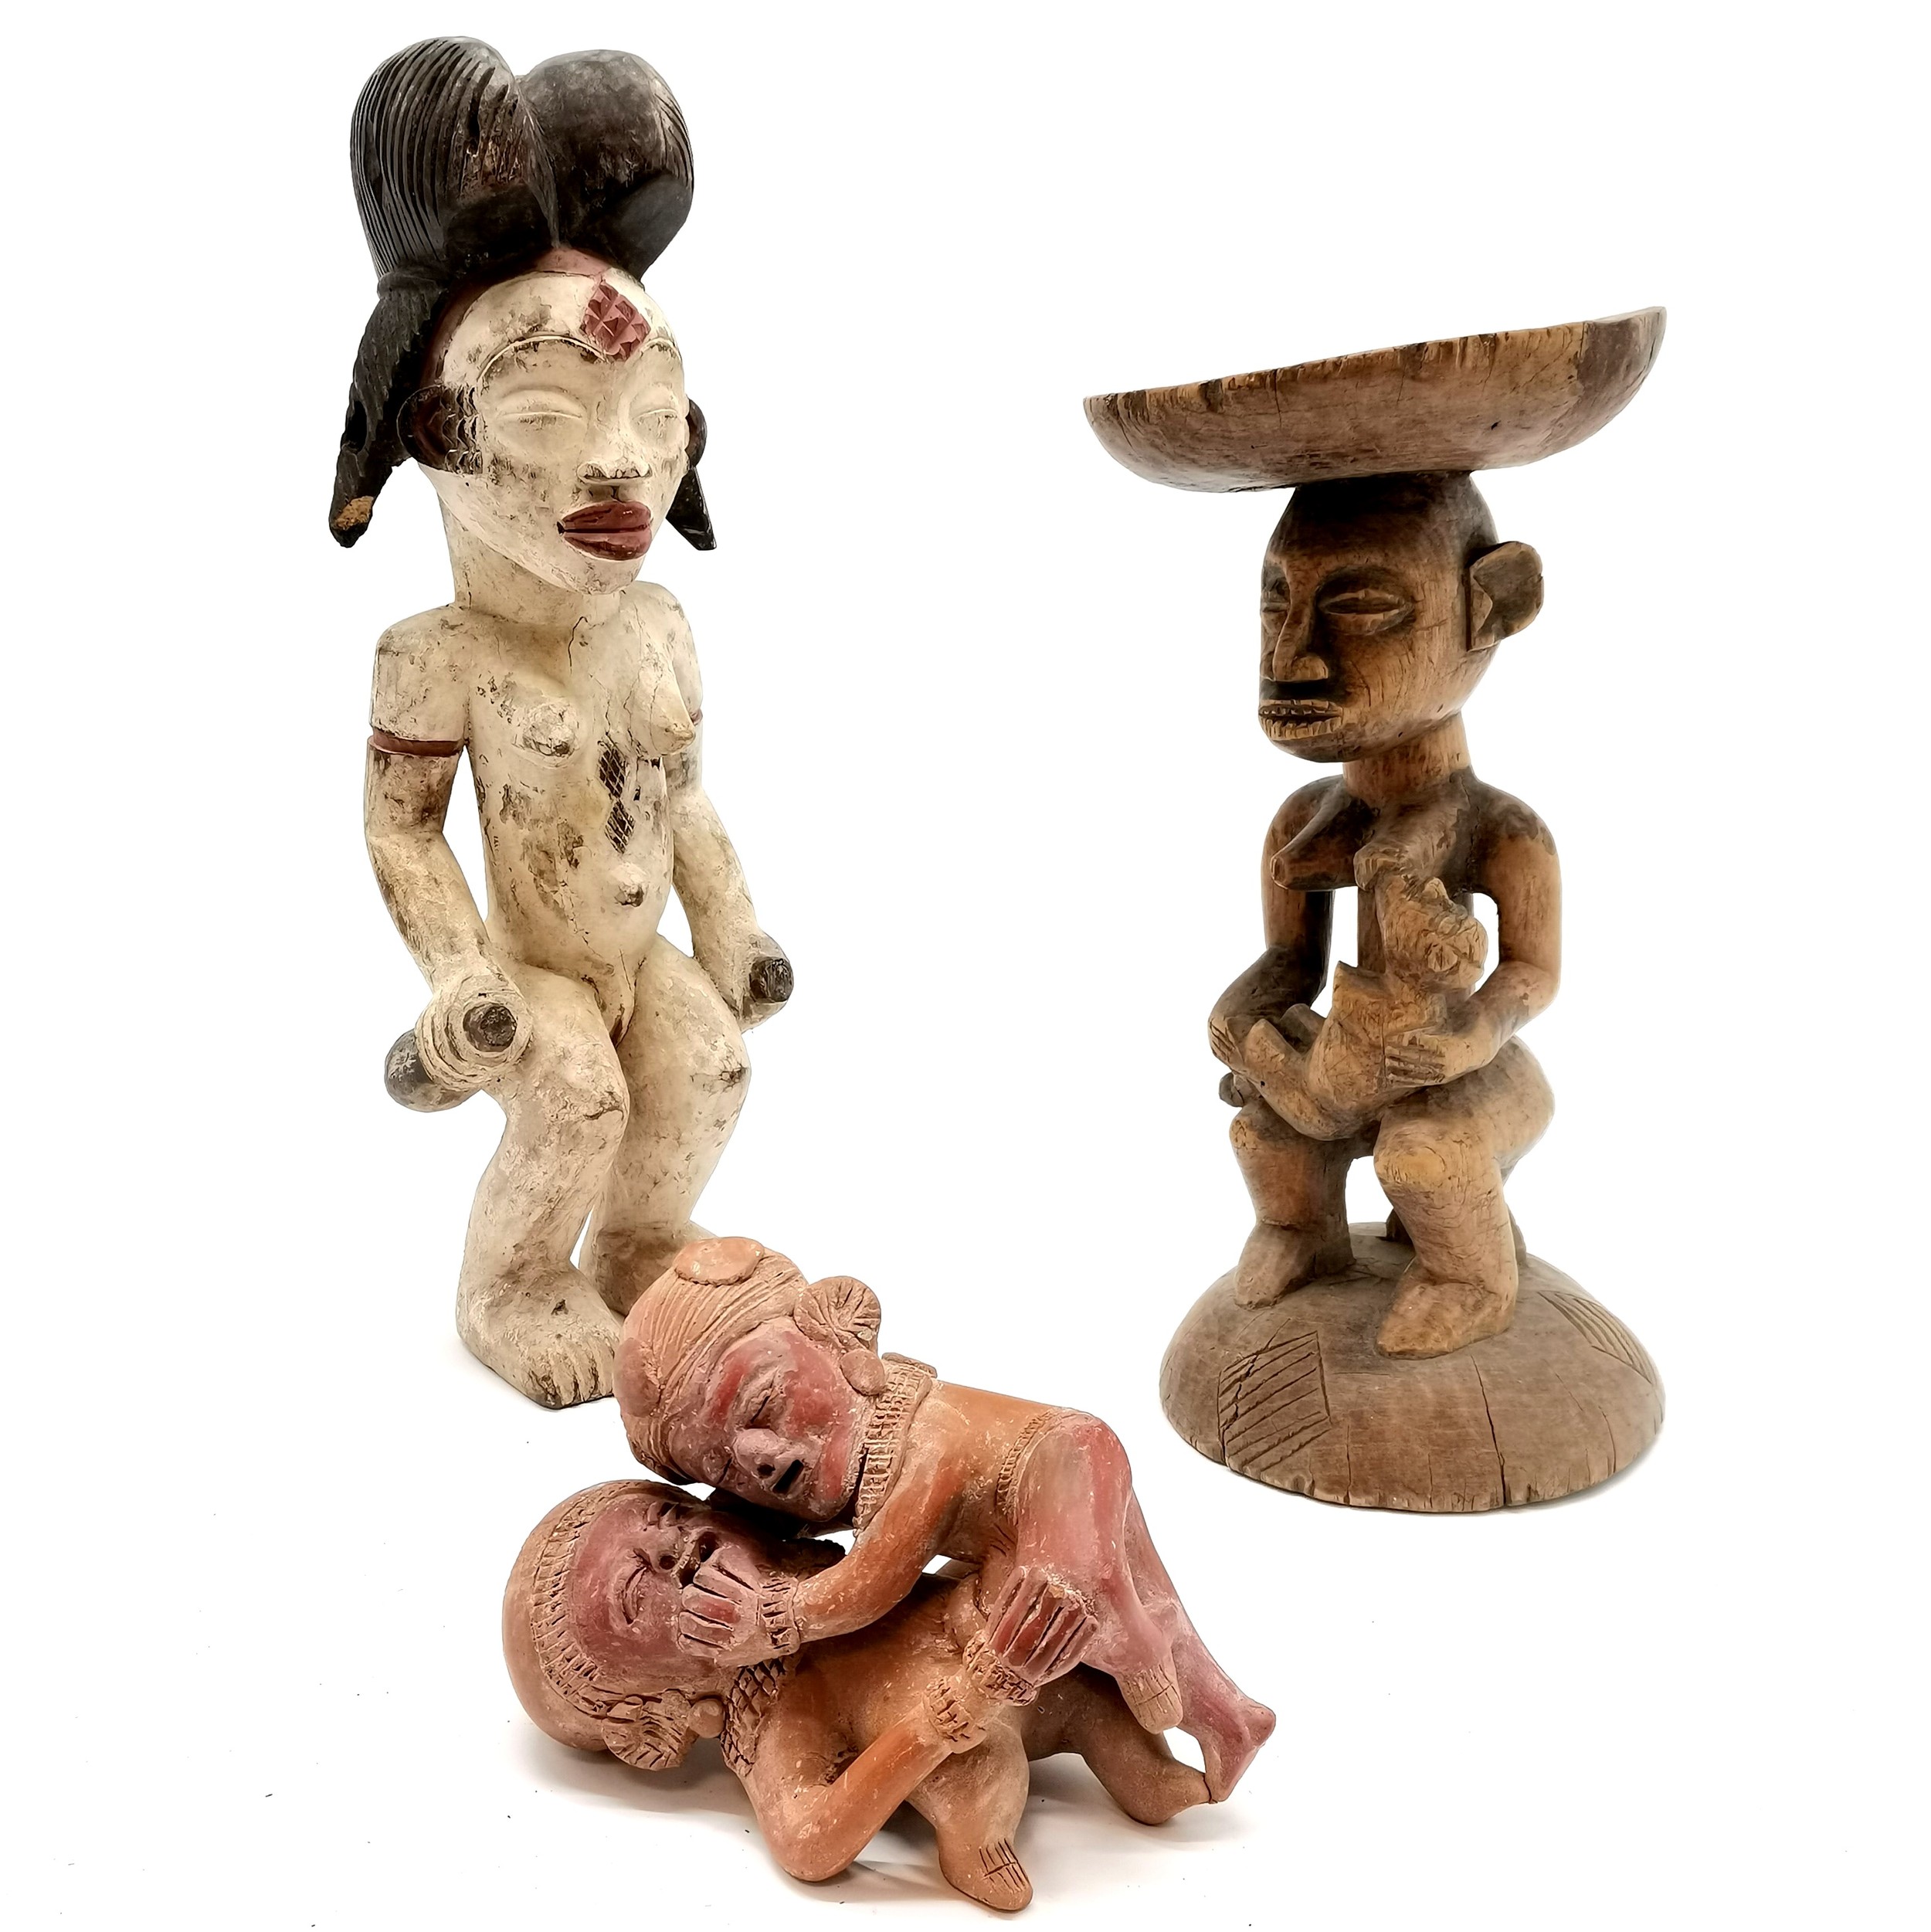 3 x African tribal figures inc terracotta copulating couple, 2 wooden figures (tallest 46cm) -